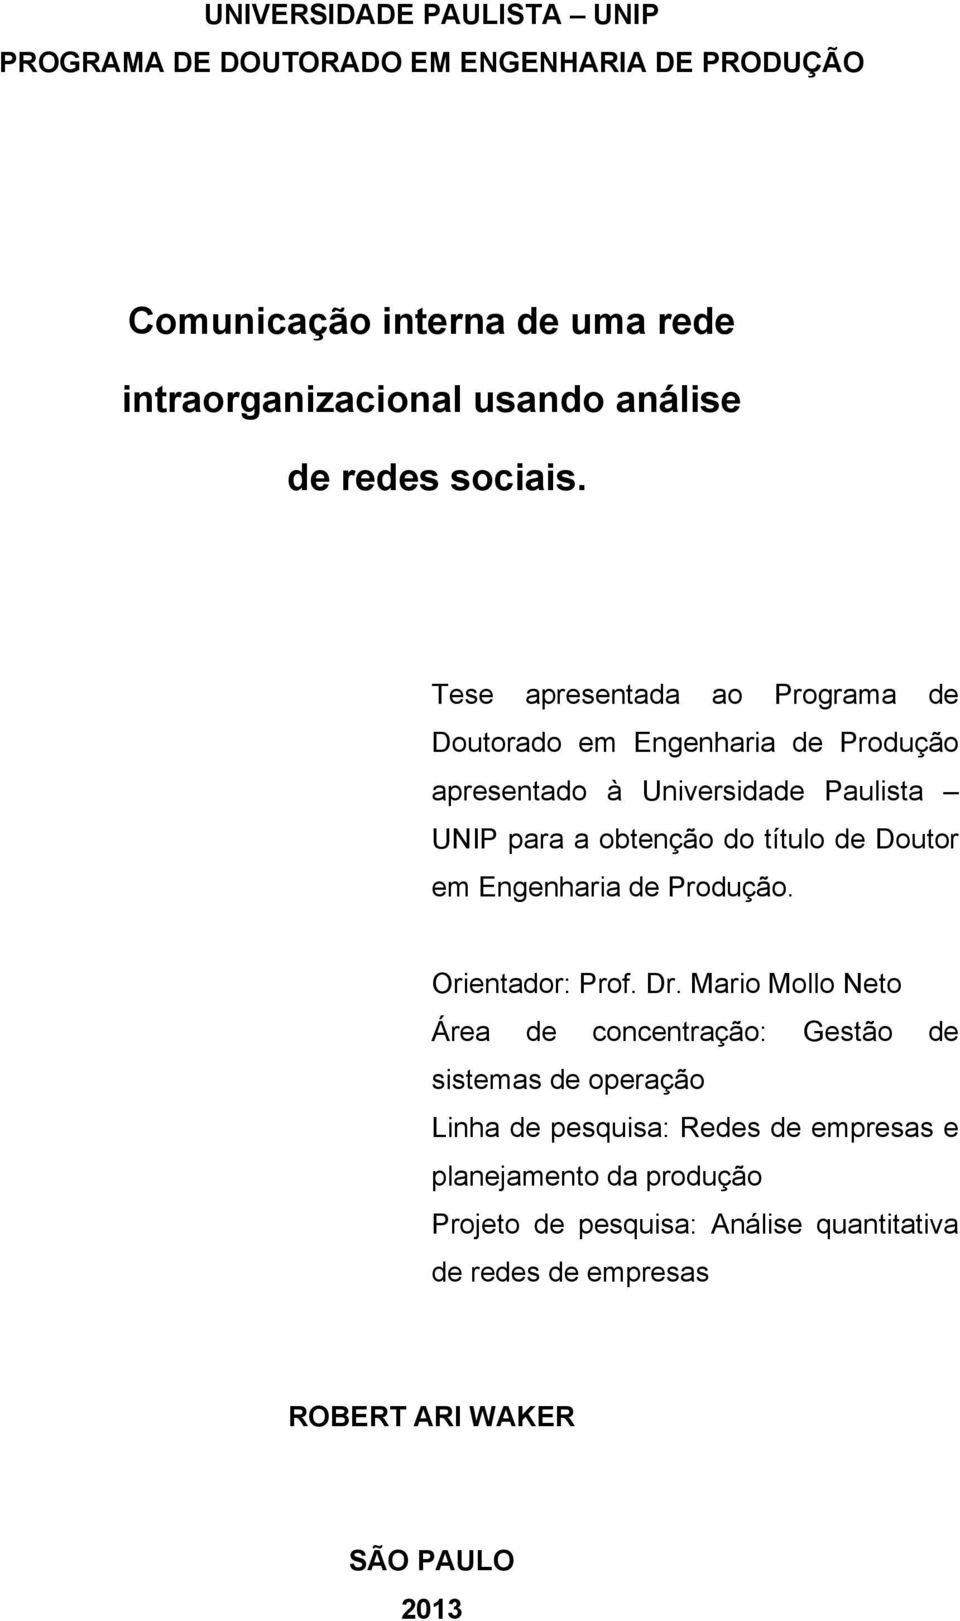 Tese apresentada ao Programa de Doutorado em Engenharia de Produção apresentado à Universidade Paulista UNIP para a obtenção do título de Doutor